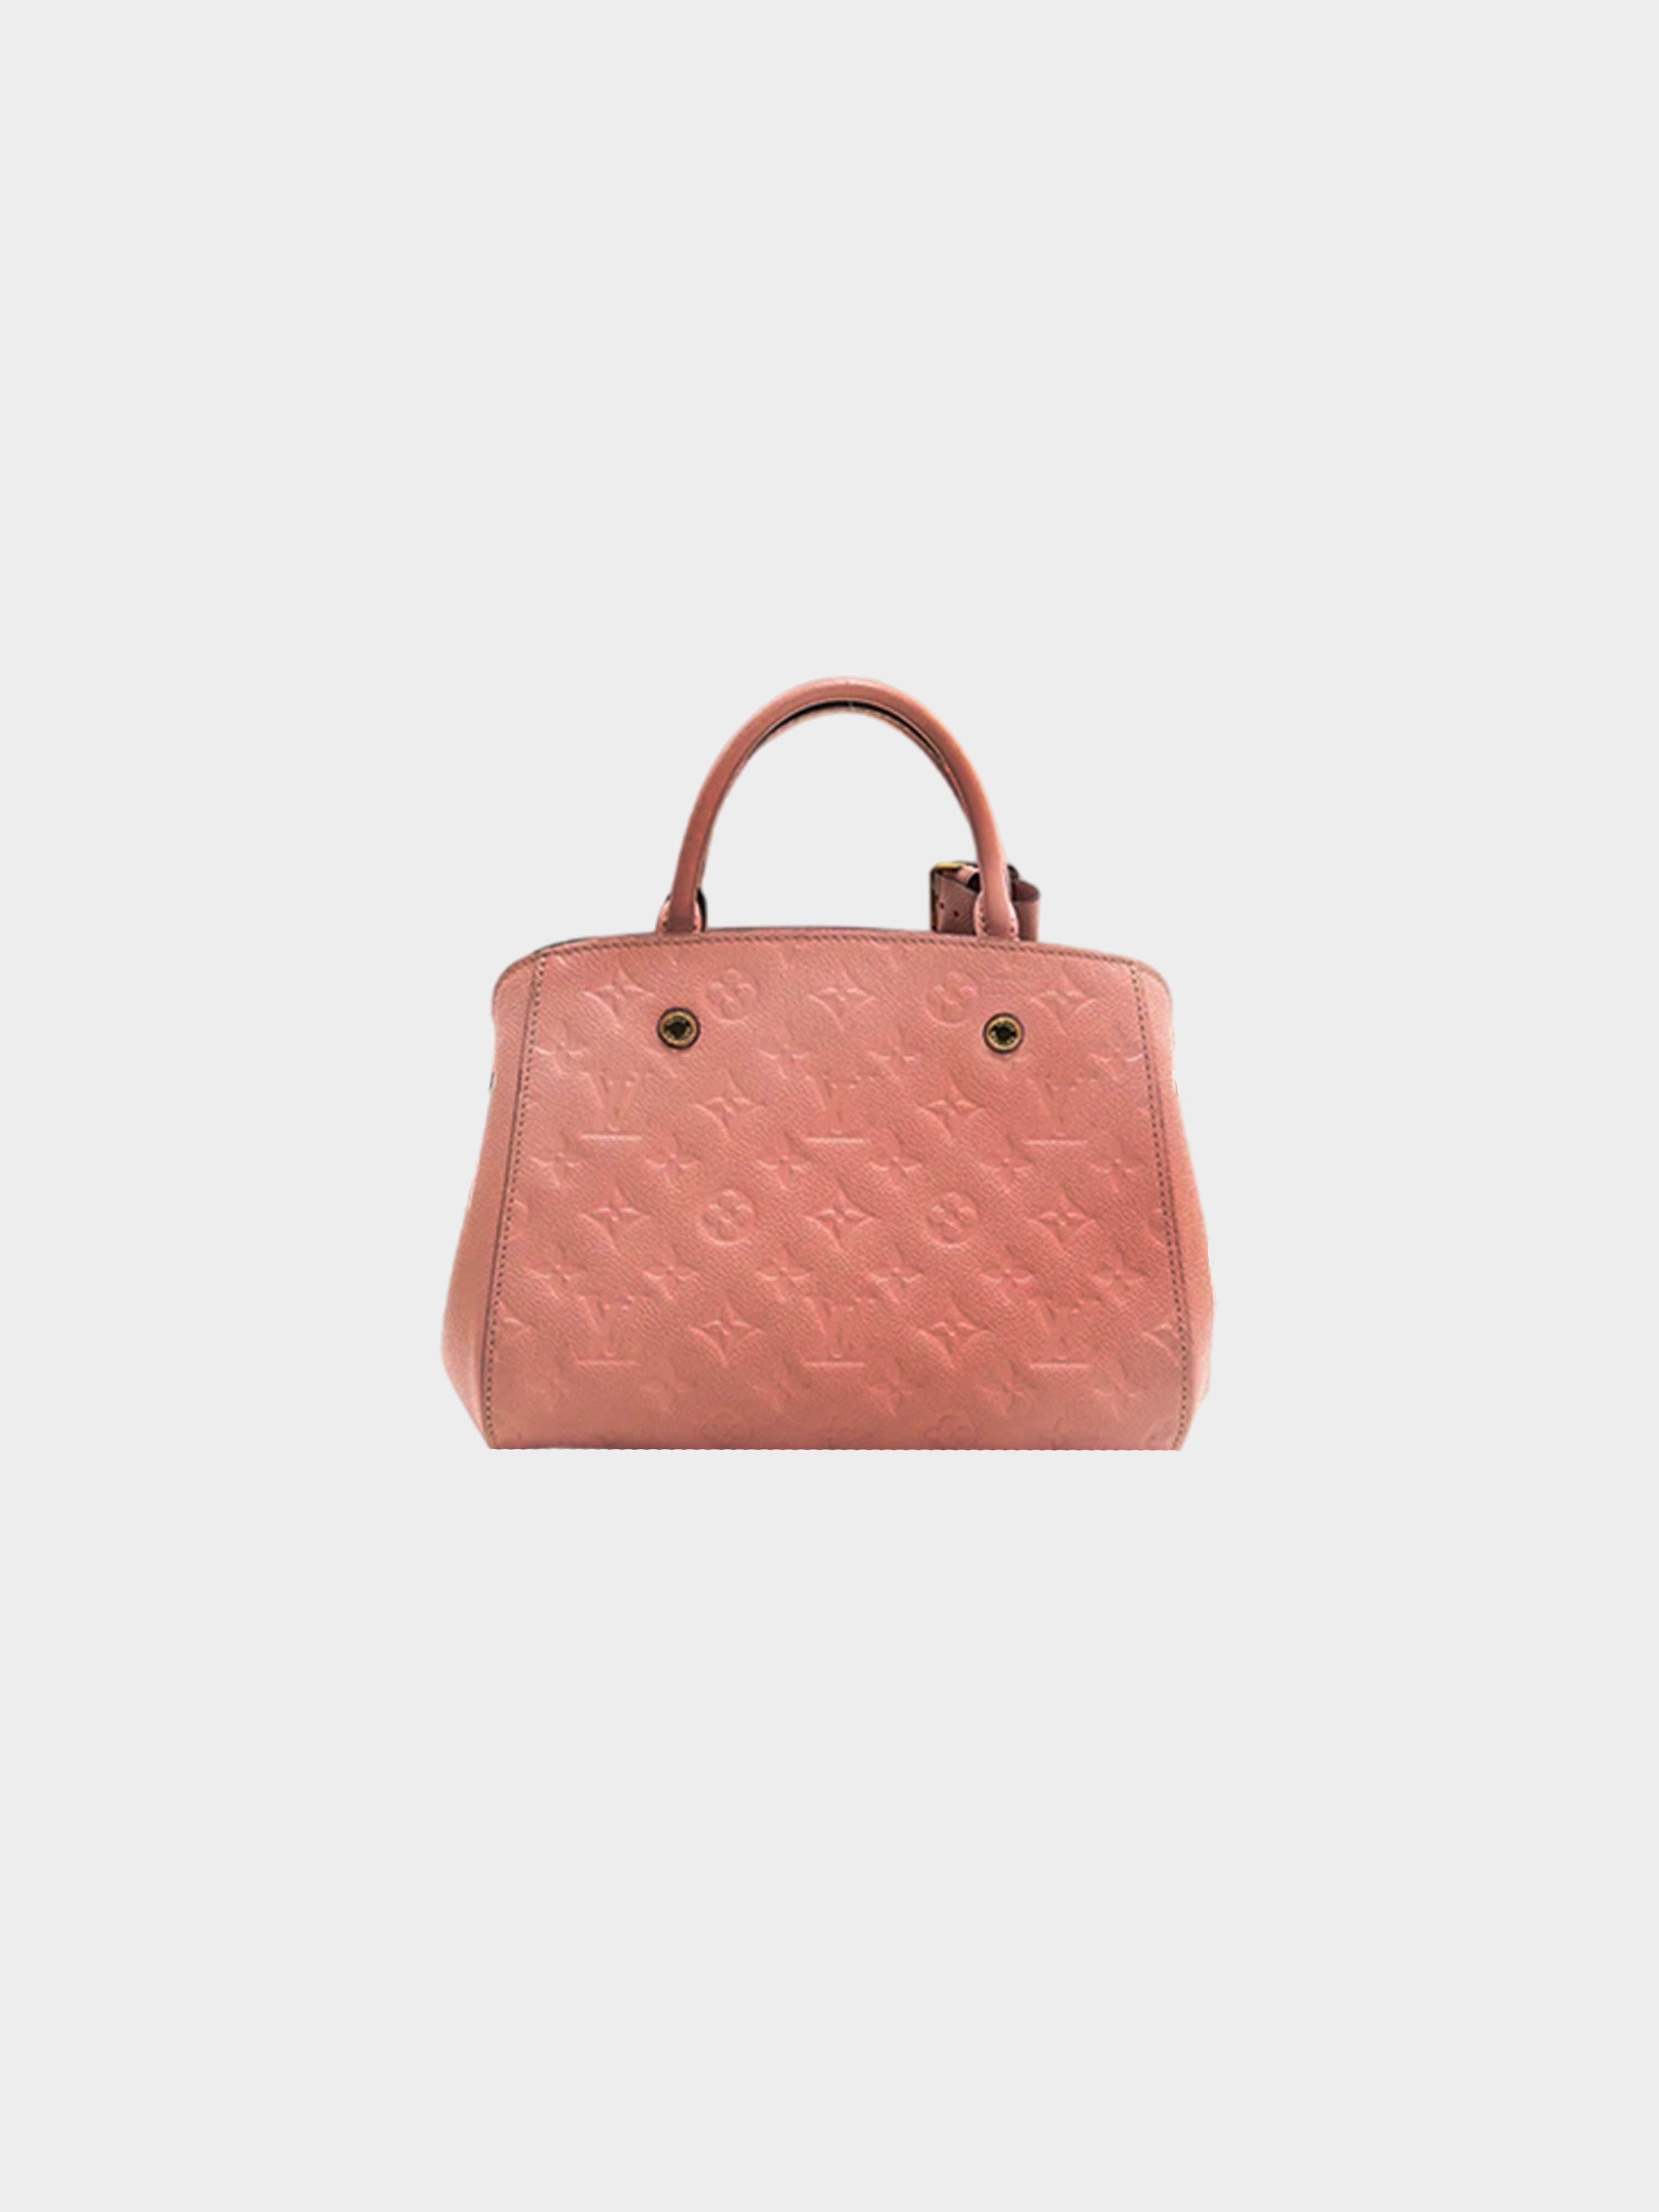 Louis Vuitton 2017 Montaigne Handbag